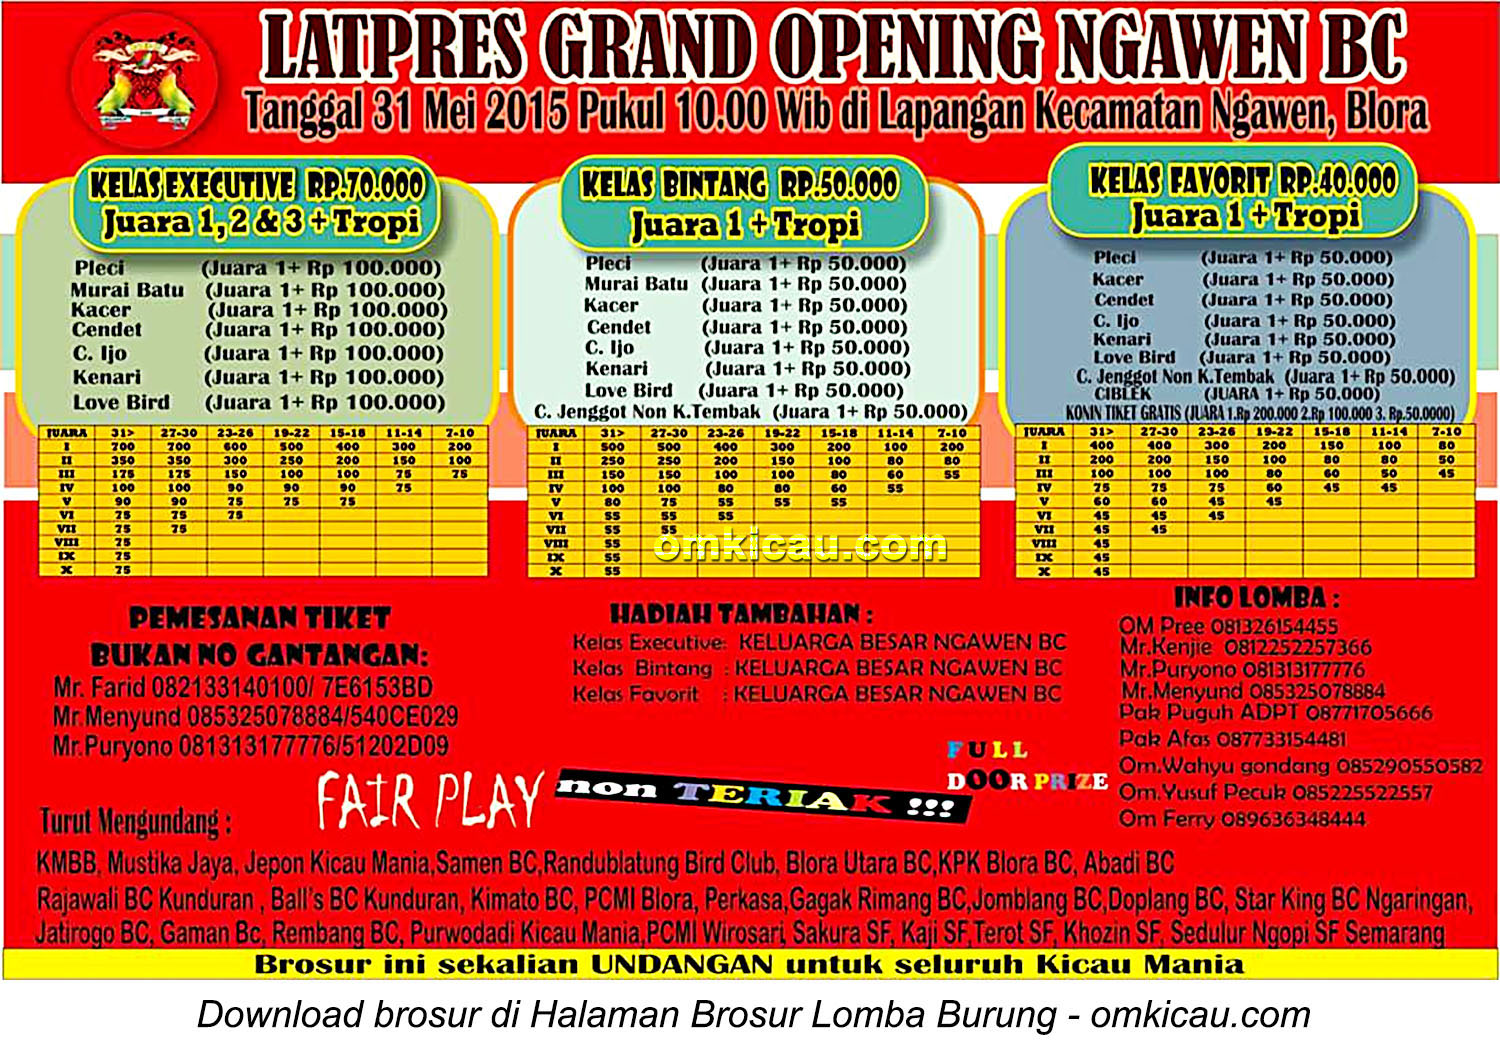 Brosur Latpres Grand Opening Ngawen BC, Blora, 31 Mei 2015